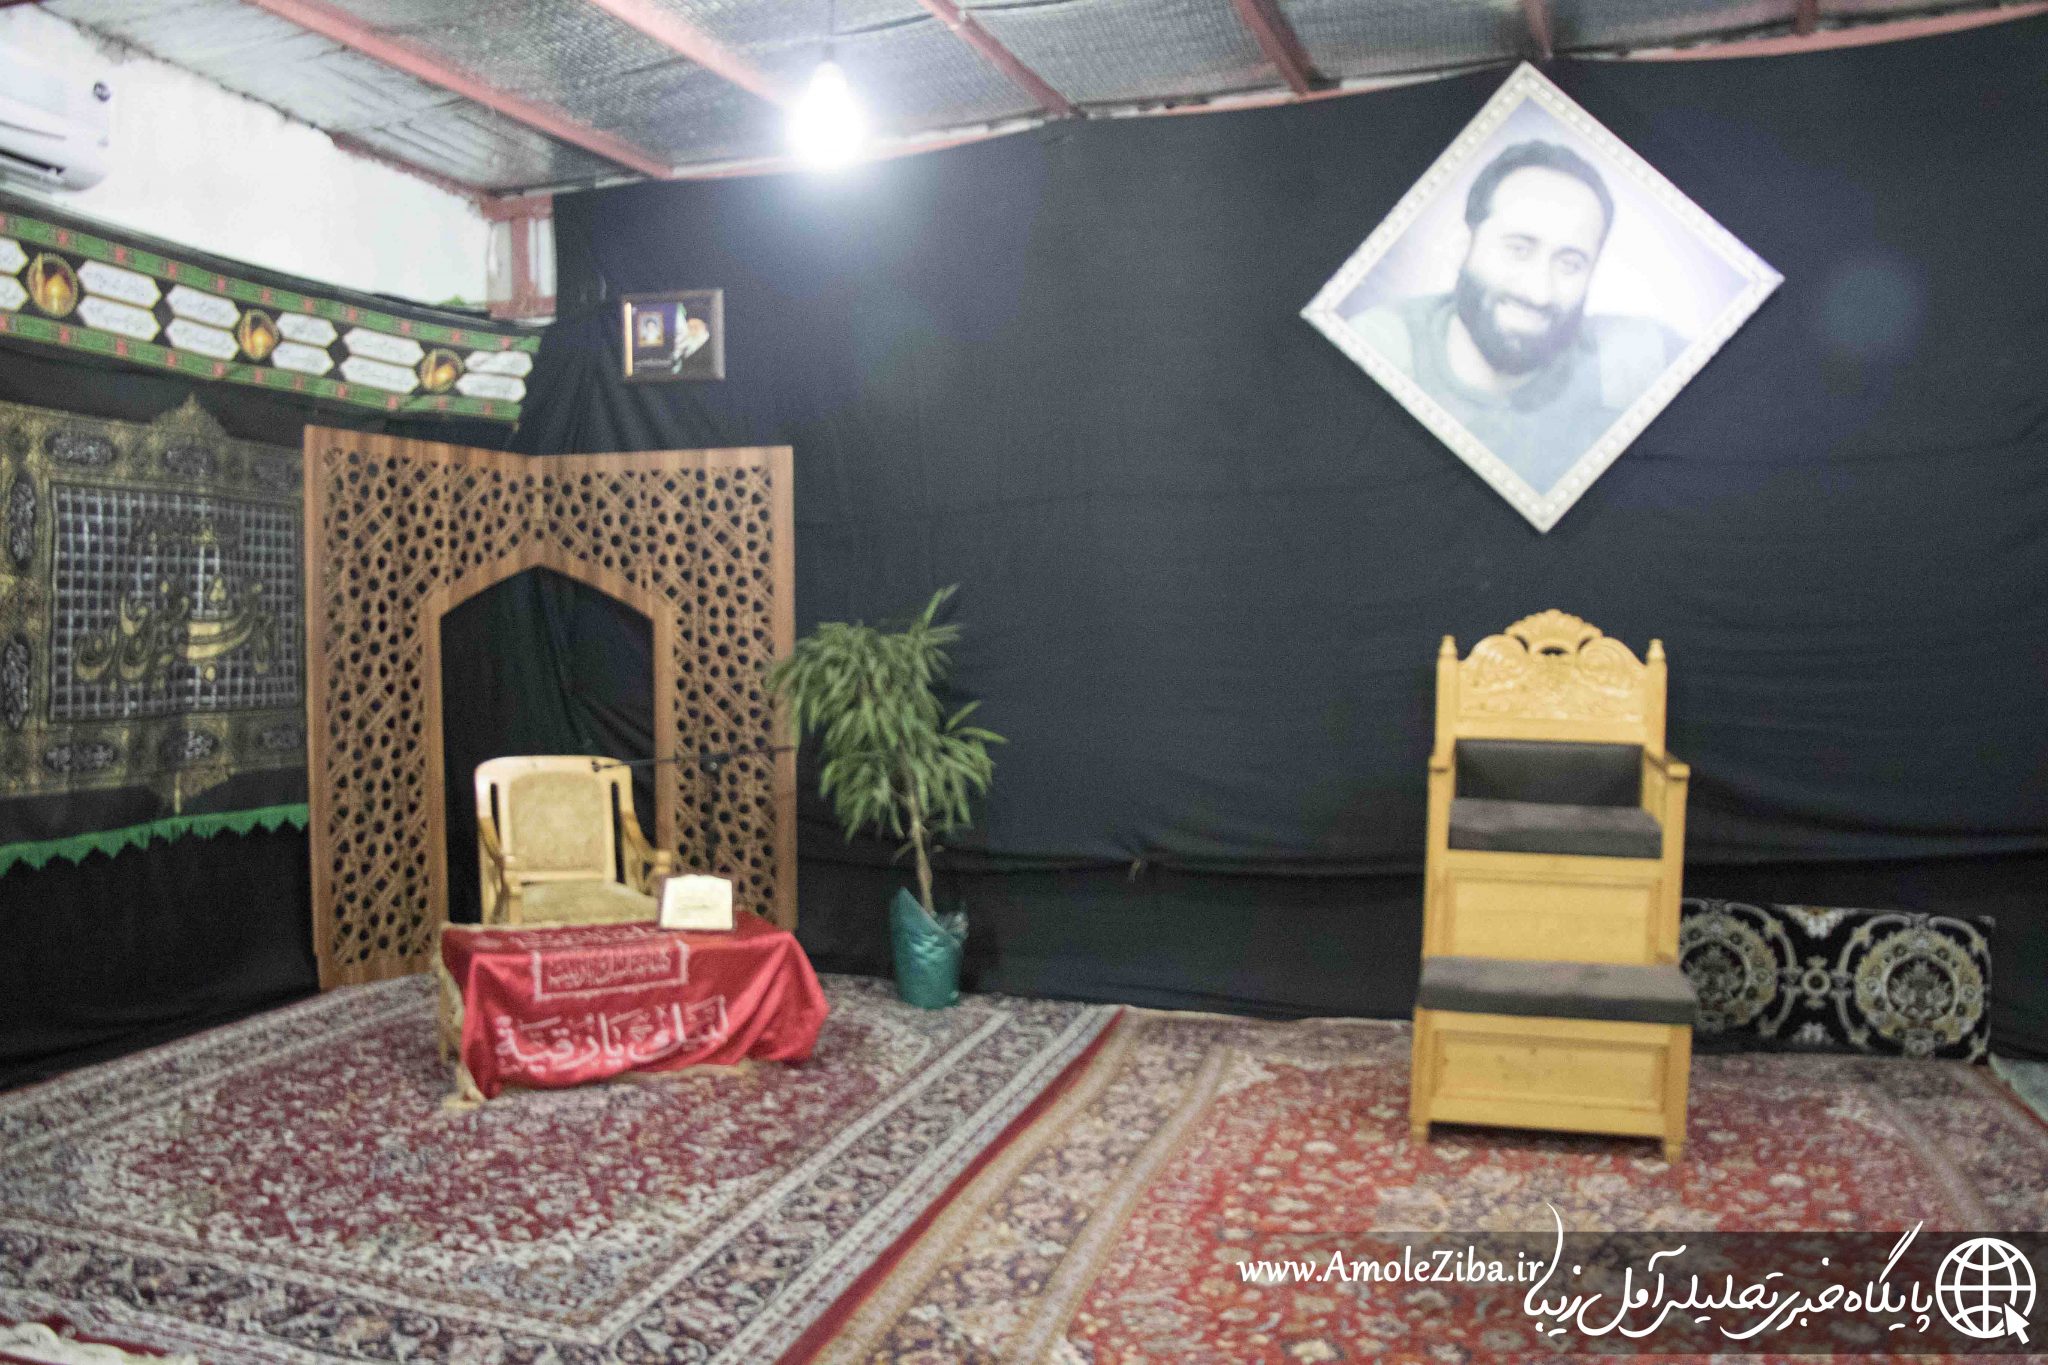 گزارش تصویری از فاز دوم مجتمع مذهبی فرهنگی آل طاها/یادمان شهدای مدافع حرم شهرستان آمل